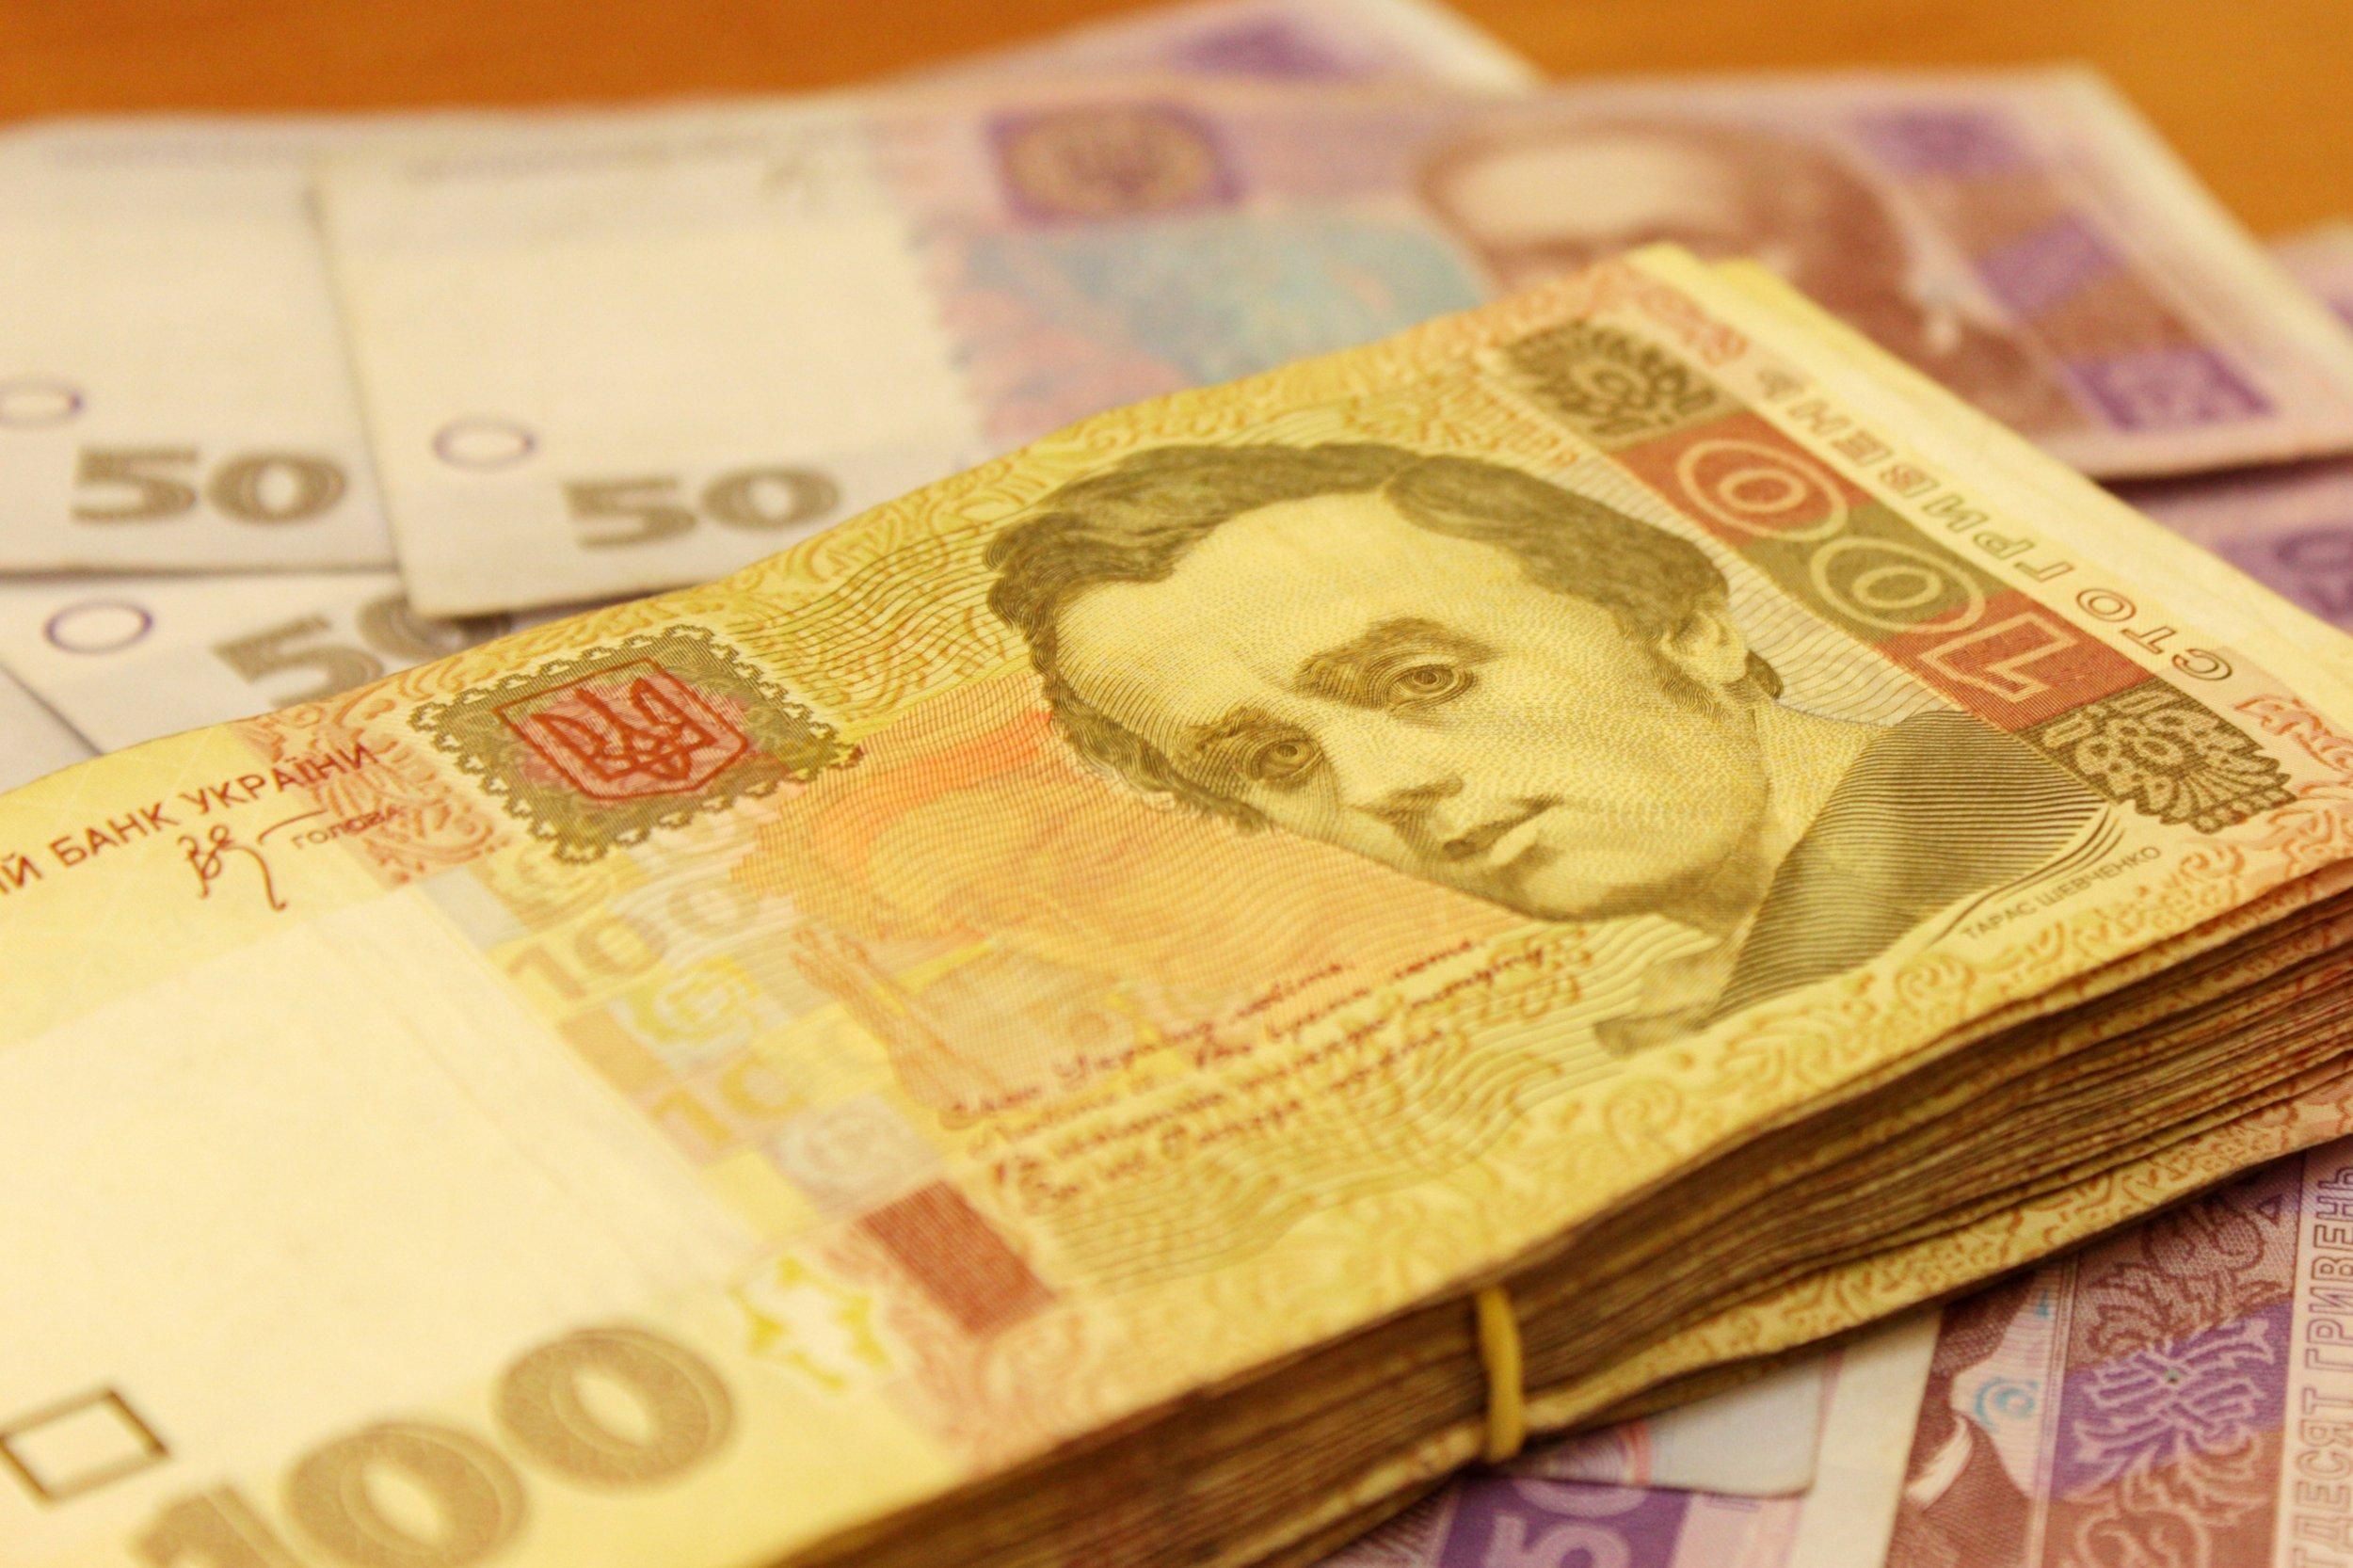 Украина продала облигации стоимостью более 9 миллиардов гривен